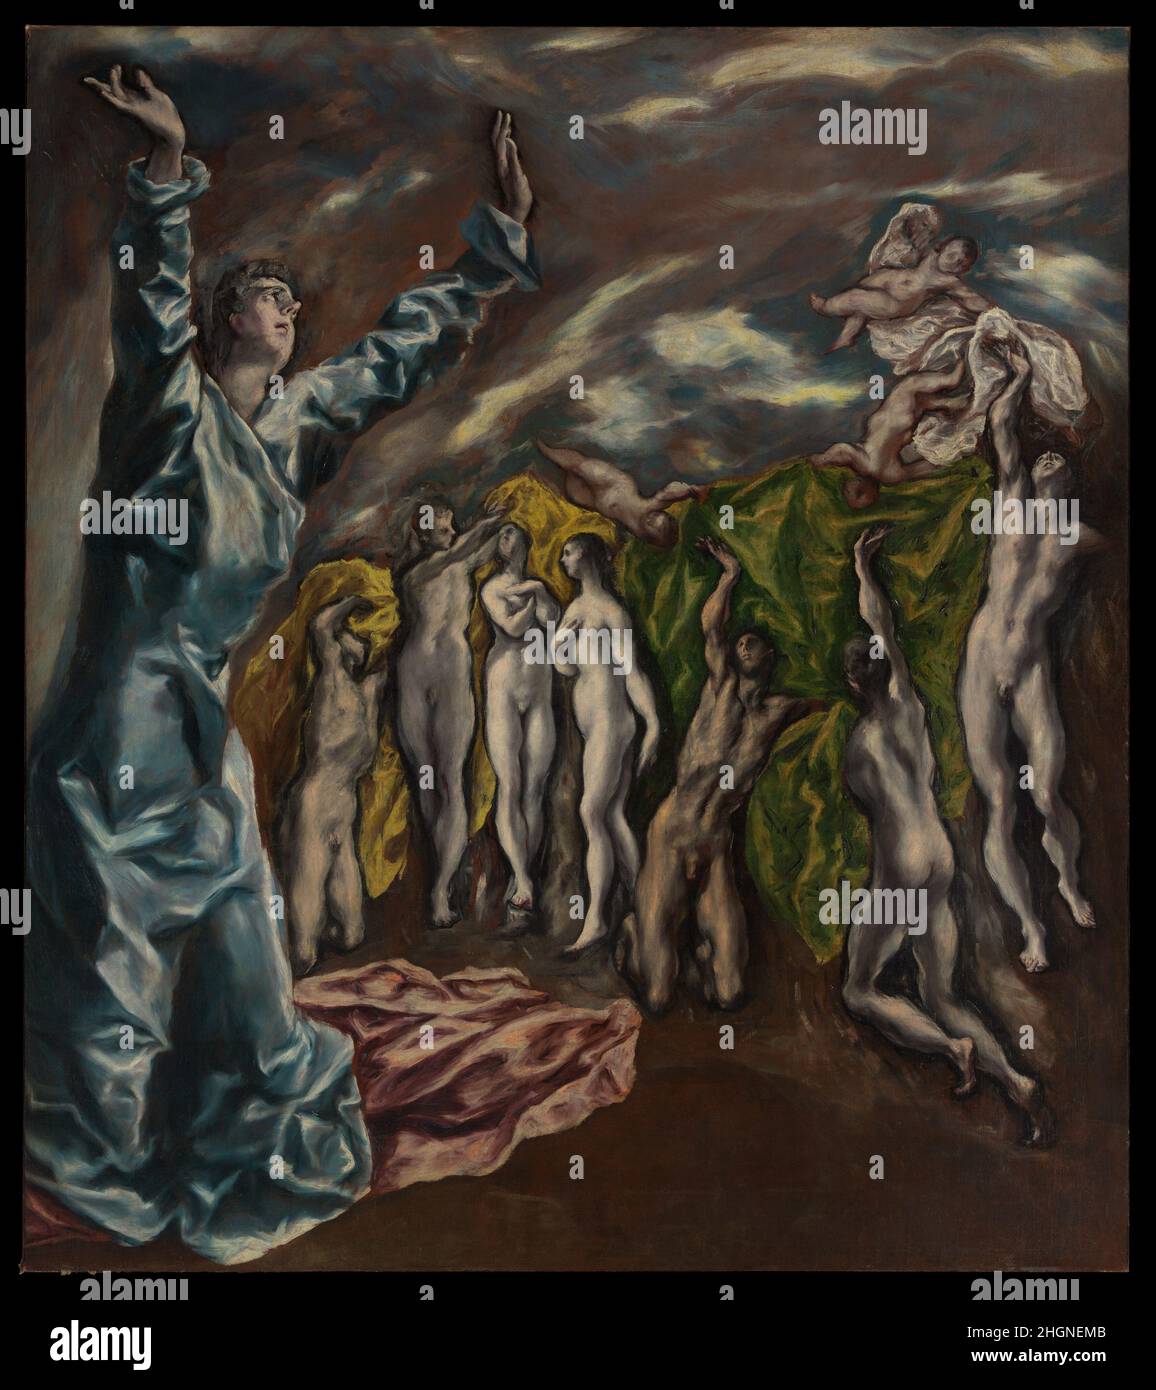 Die Vision des heiligen Johannes ca. 1608–14 El Greco (Domenikos Theotokopoulos) Griechisch das Gemälde ist ein Fragment eines großen Altarbildes, das für die Kirche des Krankenhauses von Johannes dem Täufer in Toledo in Auftrag gegeben wurde. Es zeigt einen Abschnitt in der Bibel, Offenbarung (6:9-11), der die Öffnung des Fünften Siegels am Ende der Zeit beschreibt und die Verteilung von weißen Gewändern an 'diejenigen, die für das Werk Gottes und für das Zeugnis, das sie getragen hatten, getötet worden waren'. Der fehlende obere Teil könnte gezeigt haben, dass das Opferlamm das Fünfte Siegel öffnet. Die Leinwand war ein ikonisches Werk für Künstler des 20. Jahrhunderts und Pica Stockfoto